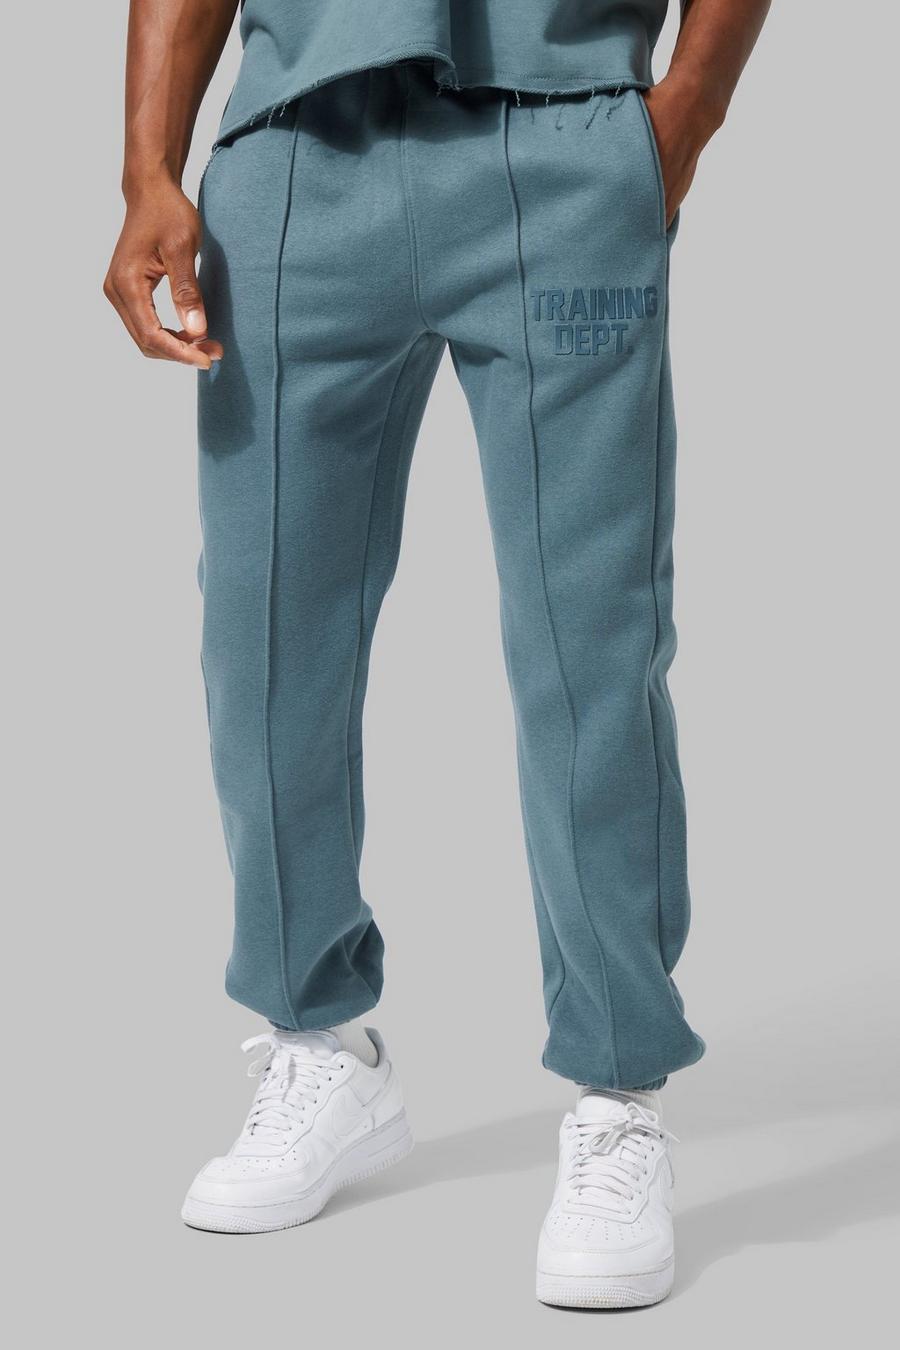 Pantaloni tuta Active Training Dept Slim Fit, Slate blue